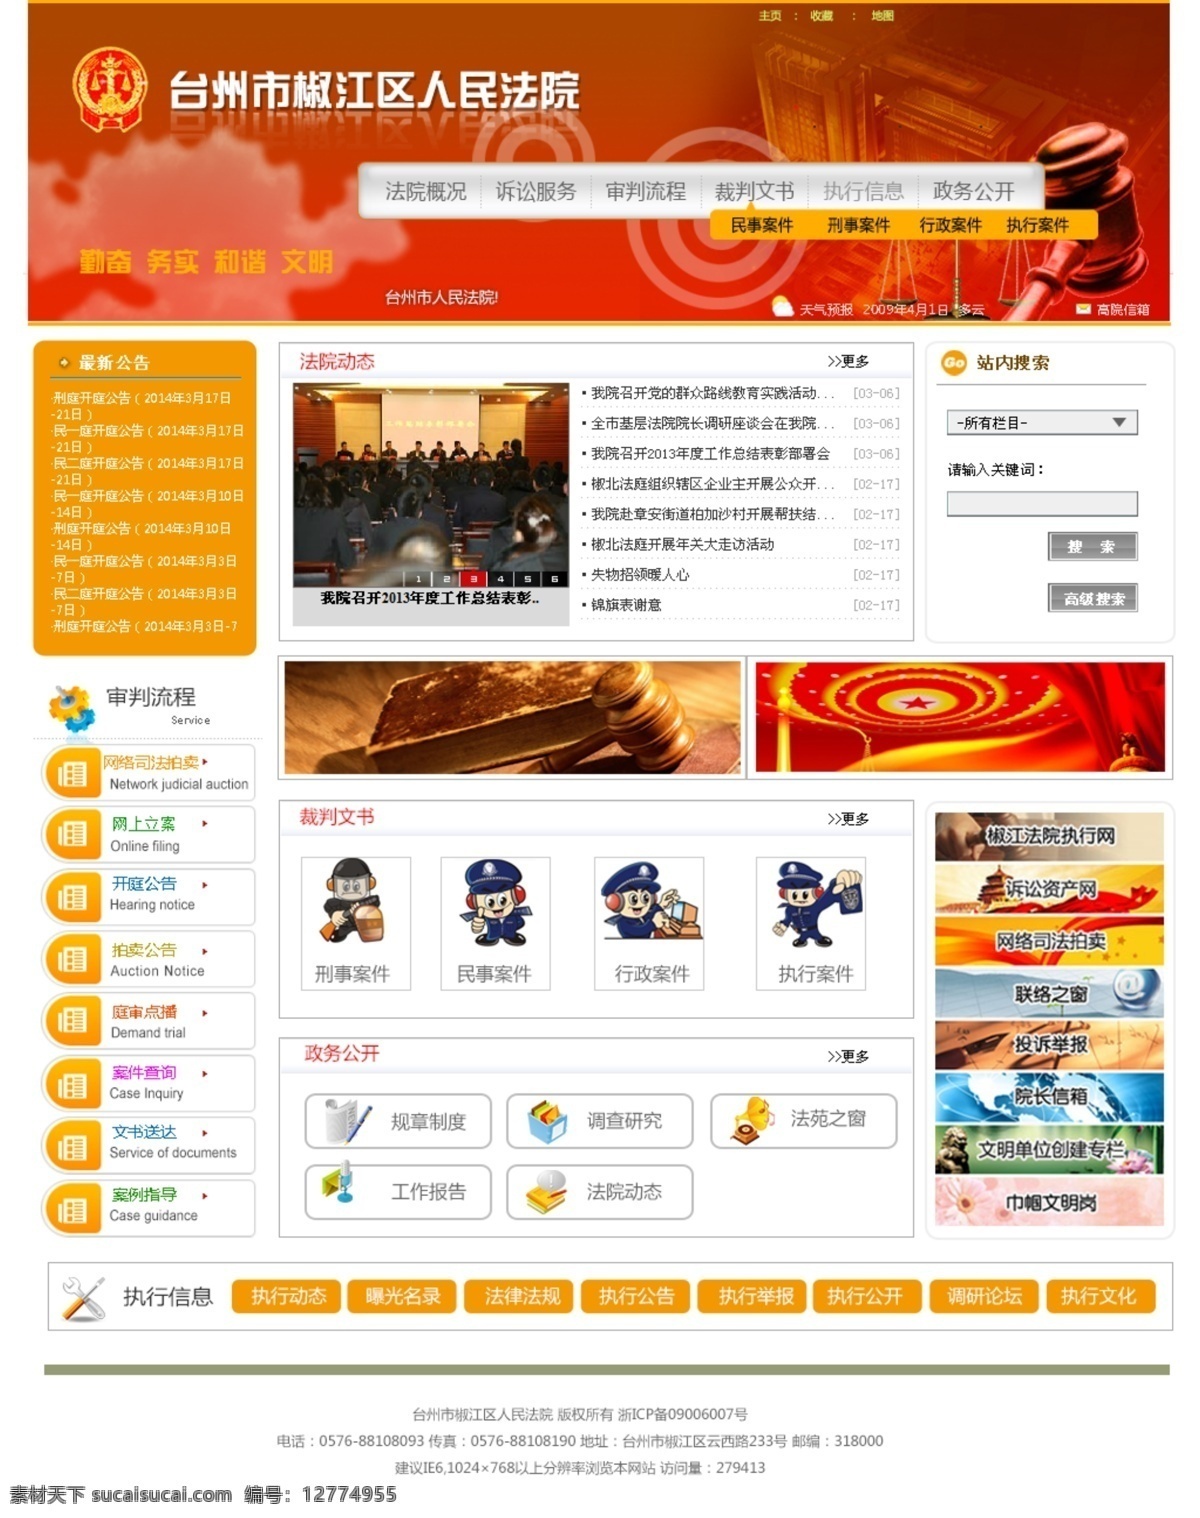 政府网站 司法 网站 蓝色 网页 源文件 中文模板 网页模板